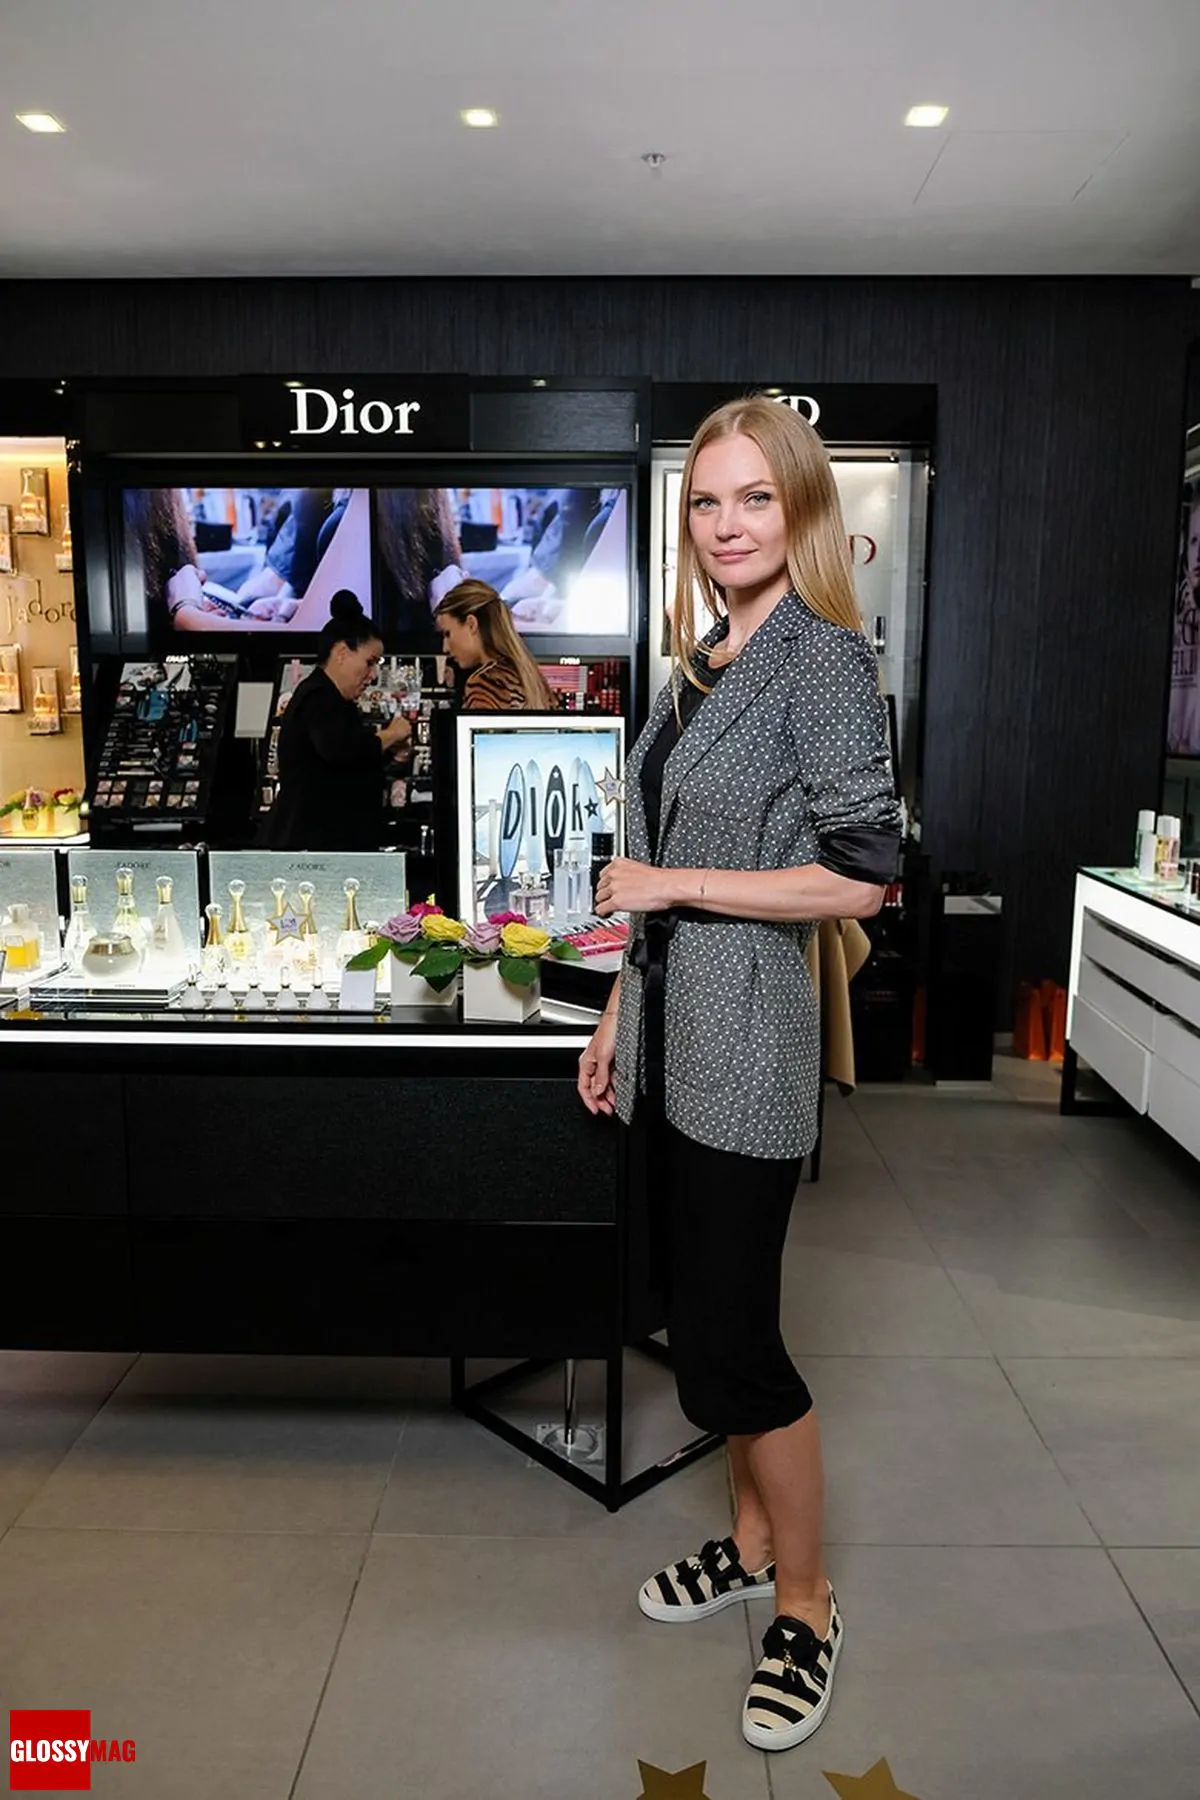 Елена Кулецкая в корнере Dior на закрытом мероприятии Beauty CHOICE в Rivoli Perfumery в ТГ Модный сезон, 28 июня 2017 г.